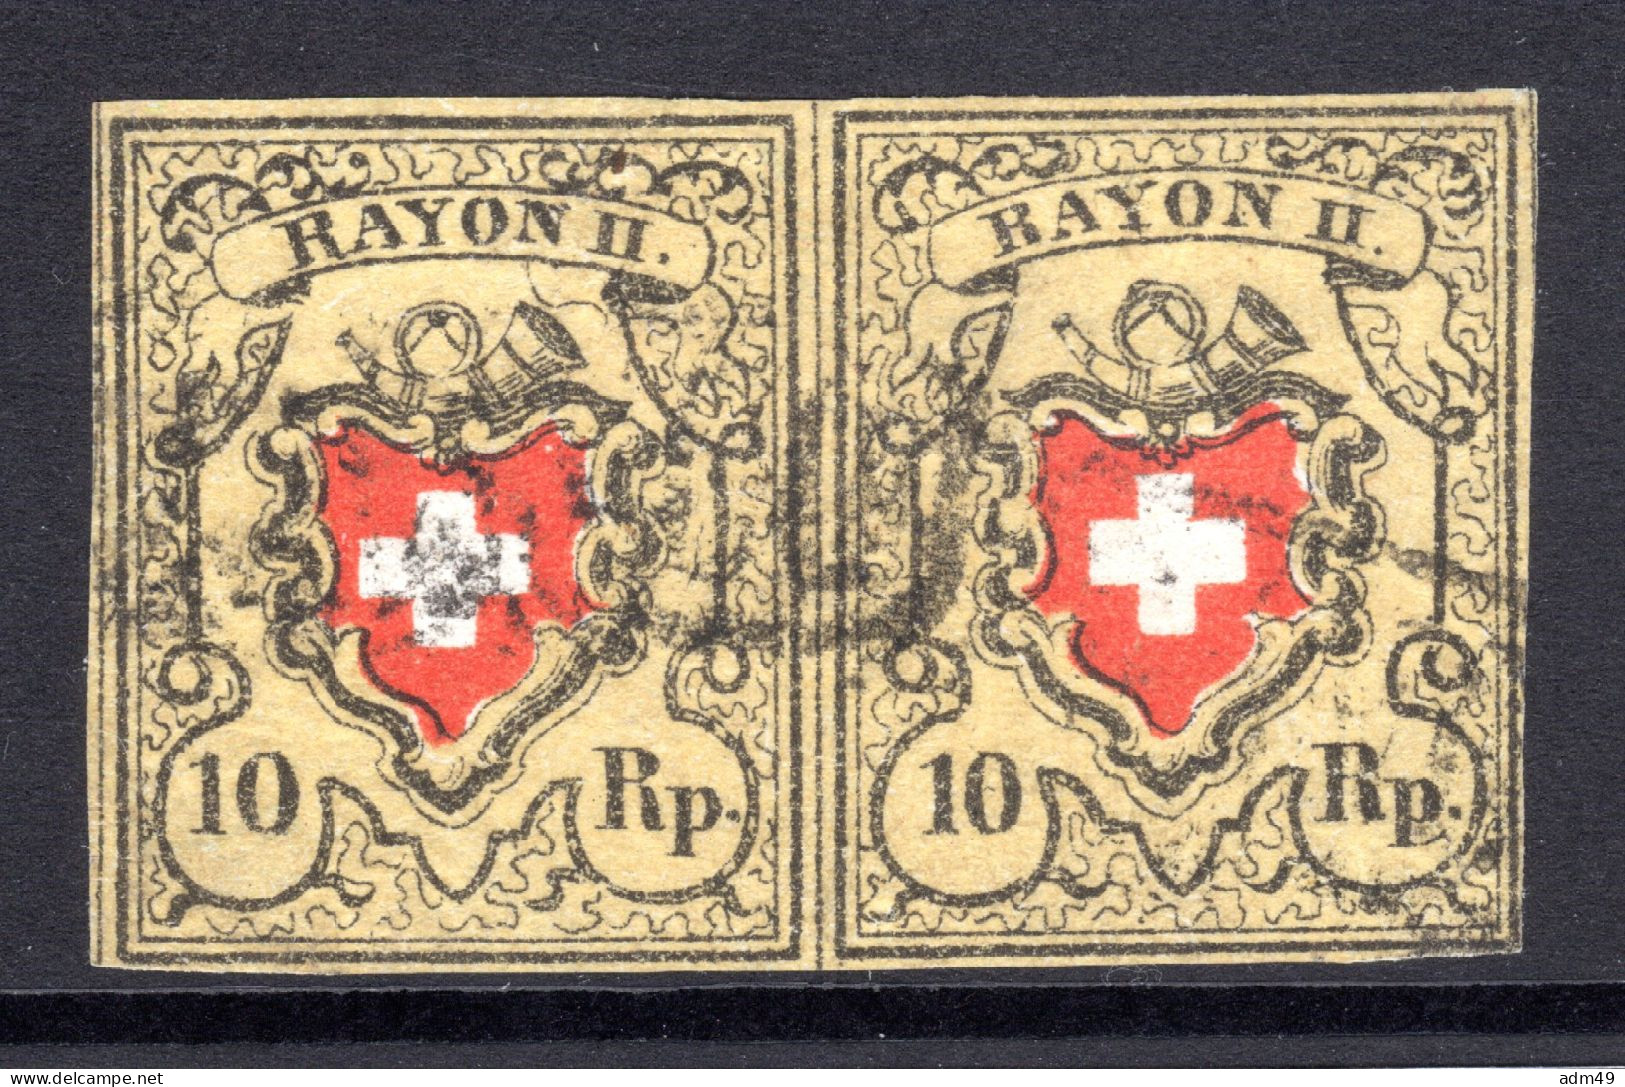 SCHWEIZ, 1850 Rayon II Gelb, Im Paar, Gestempelt - 1843-1852 Kantonalmarken Und Bundesmarken